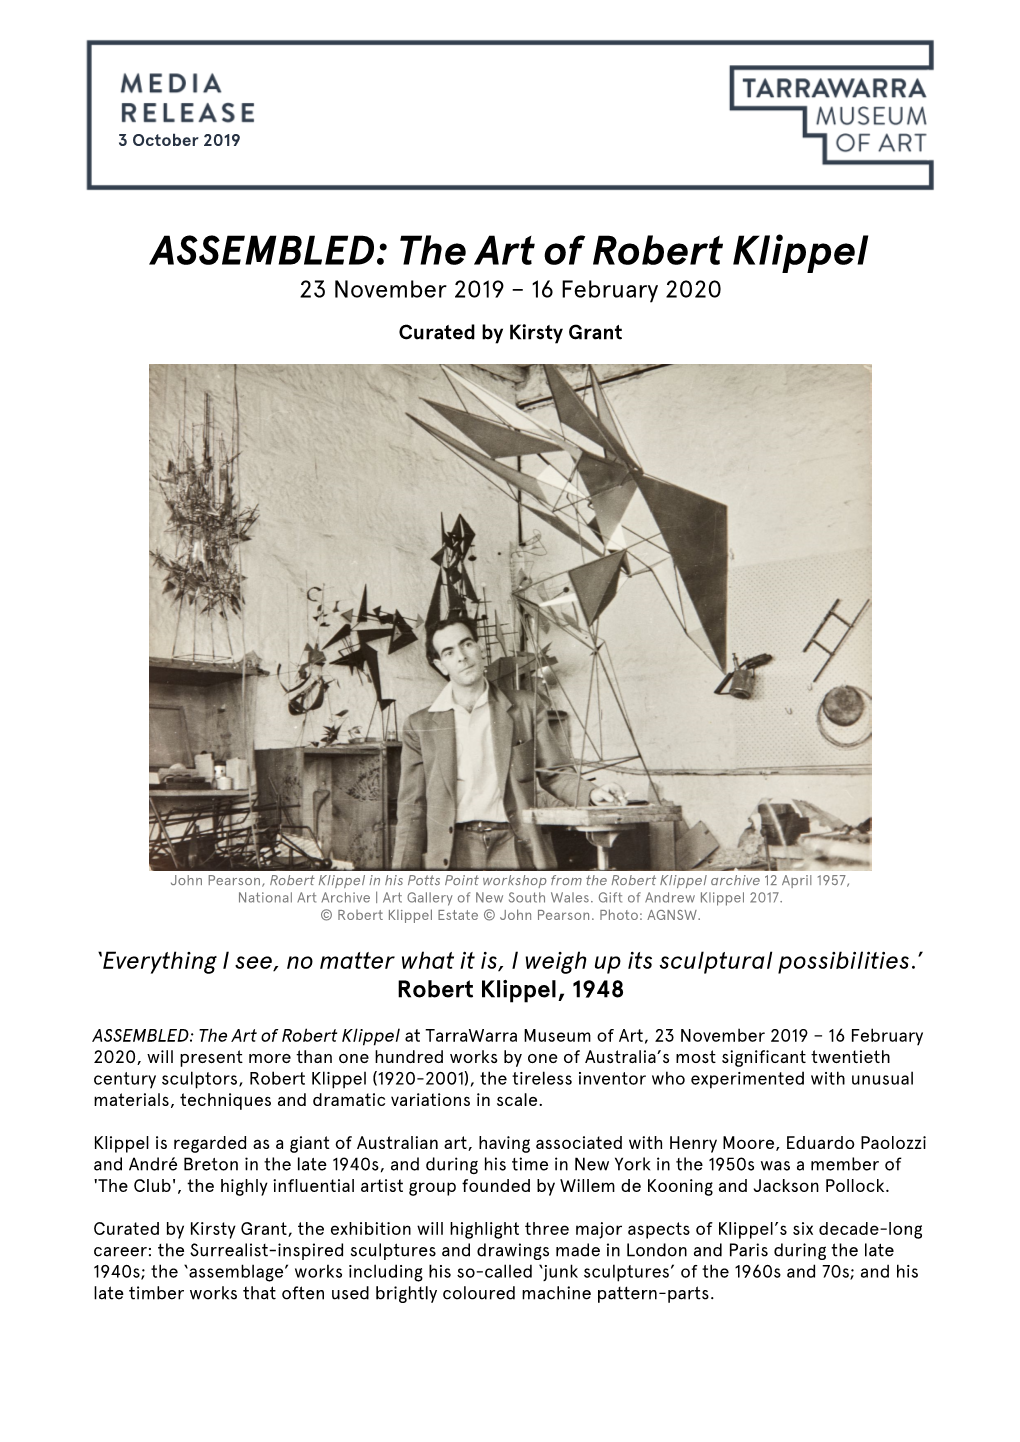 The Art of Robert Klippel 23 November 2019 – 16 February 2020